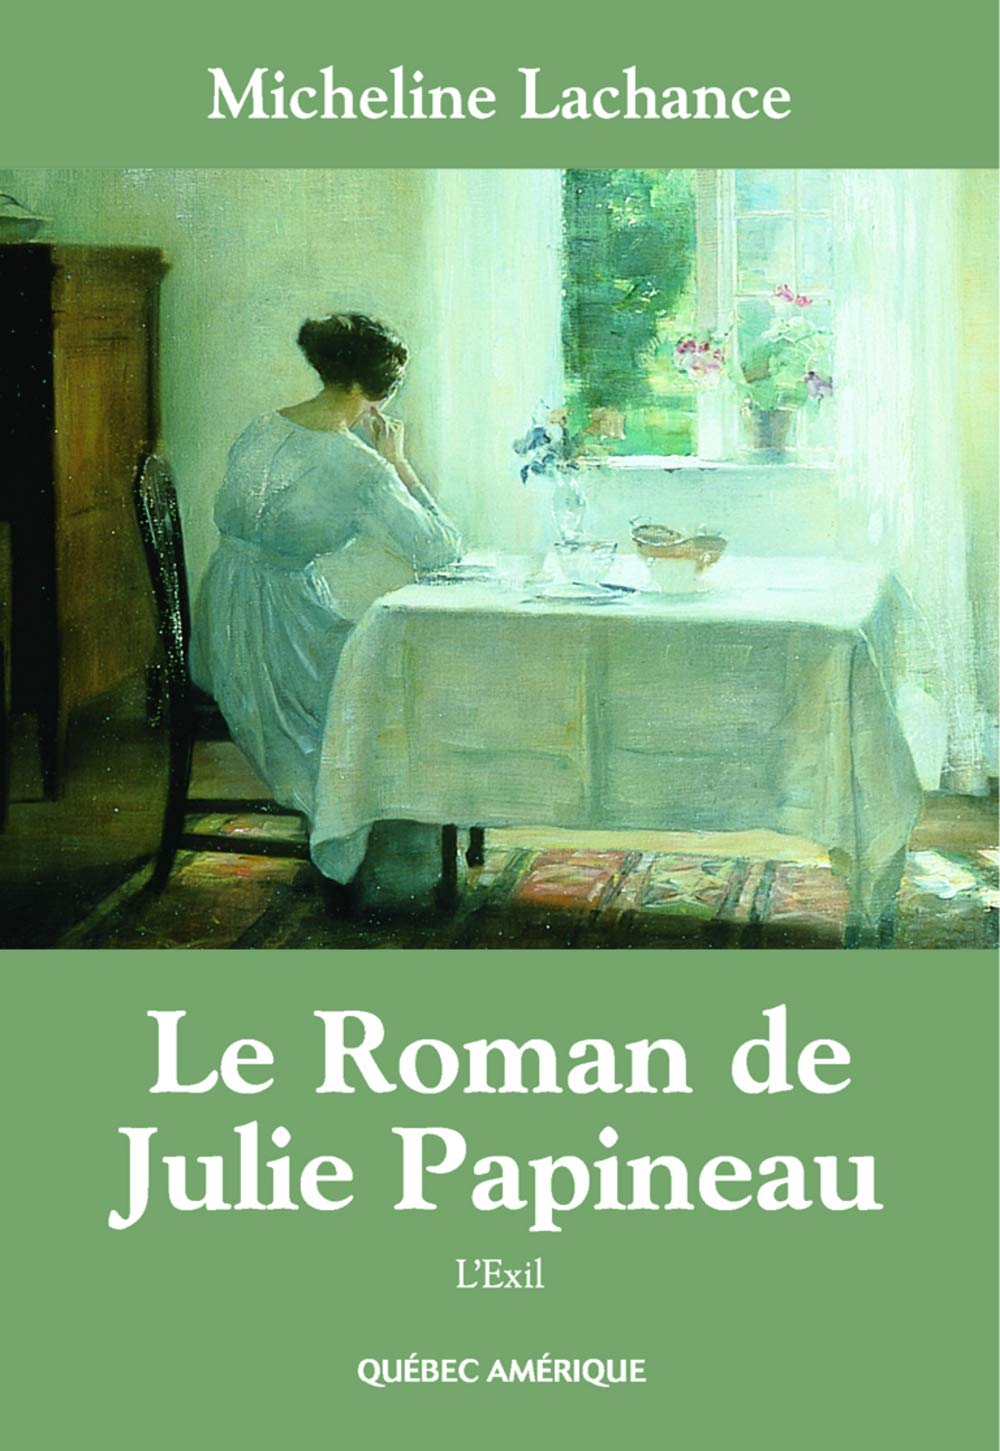 Le Roman de Julie Papineau # 2 : L'exil - Micheline Lachance